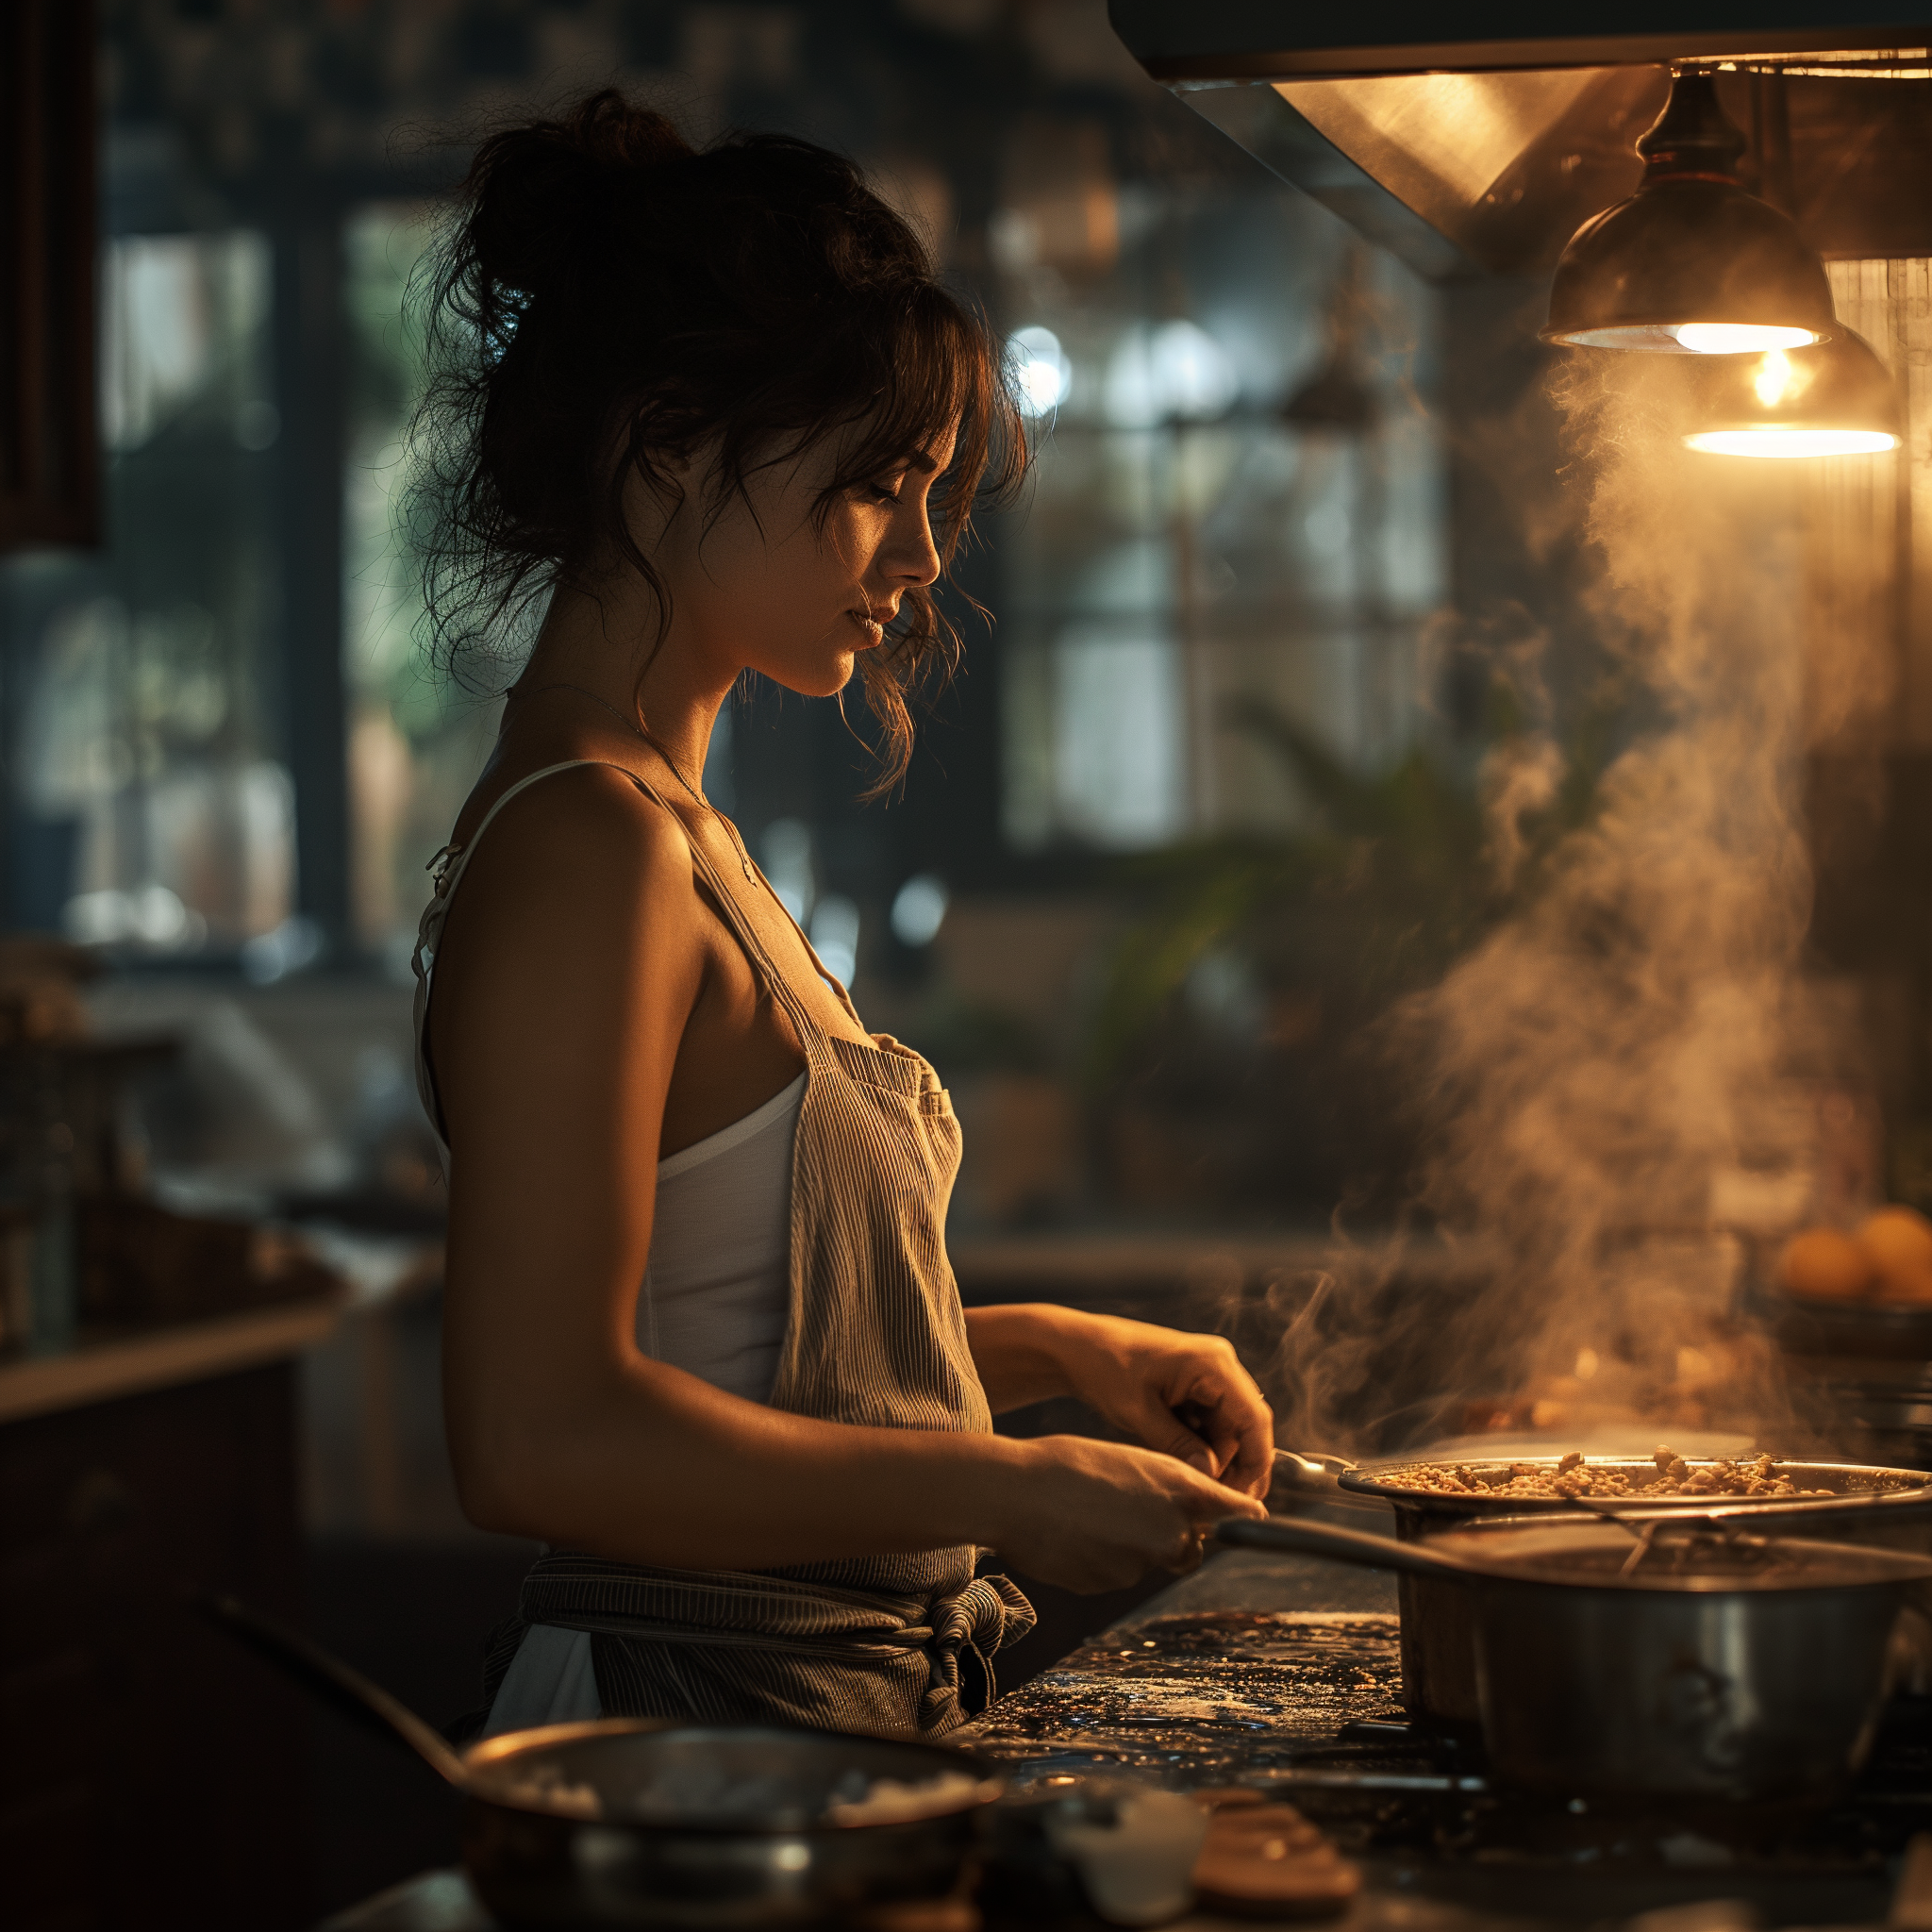 Une femme en train de cuisiner | Source : Midjourney